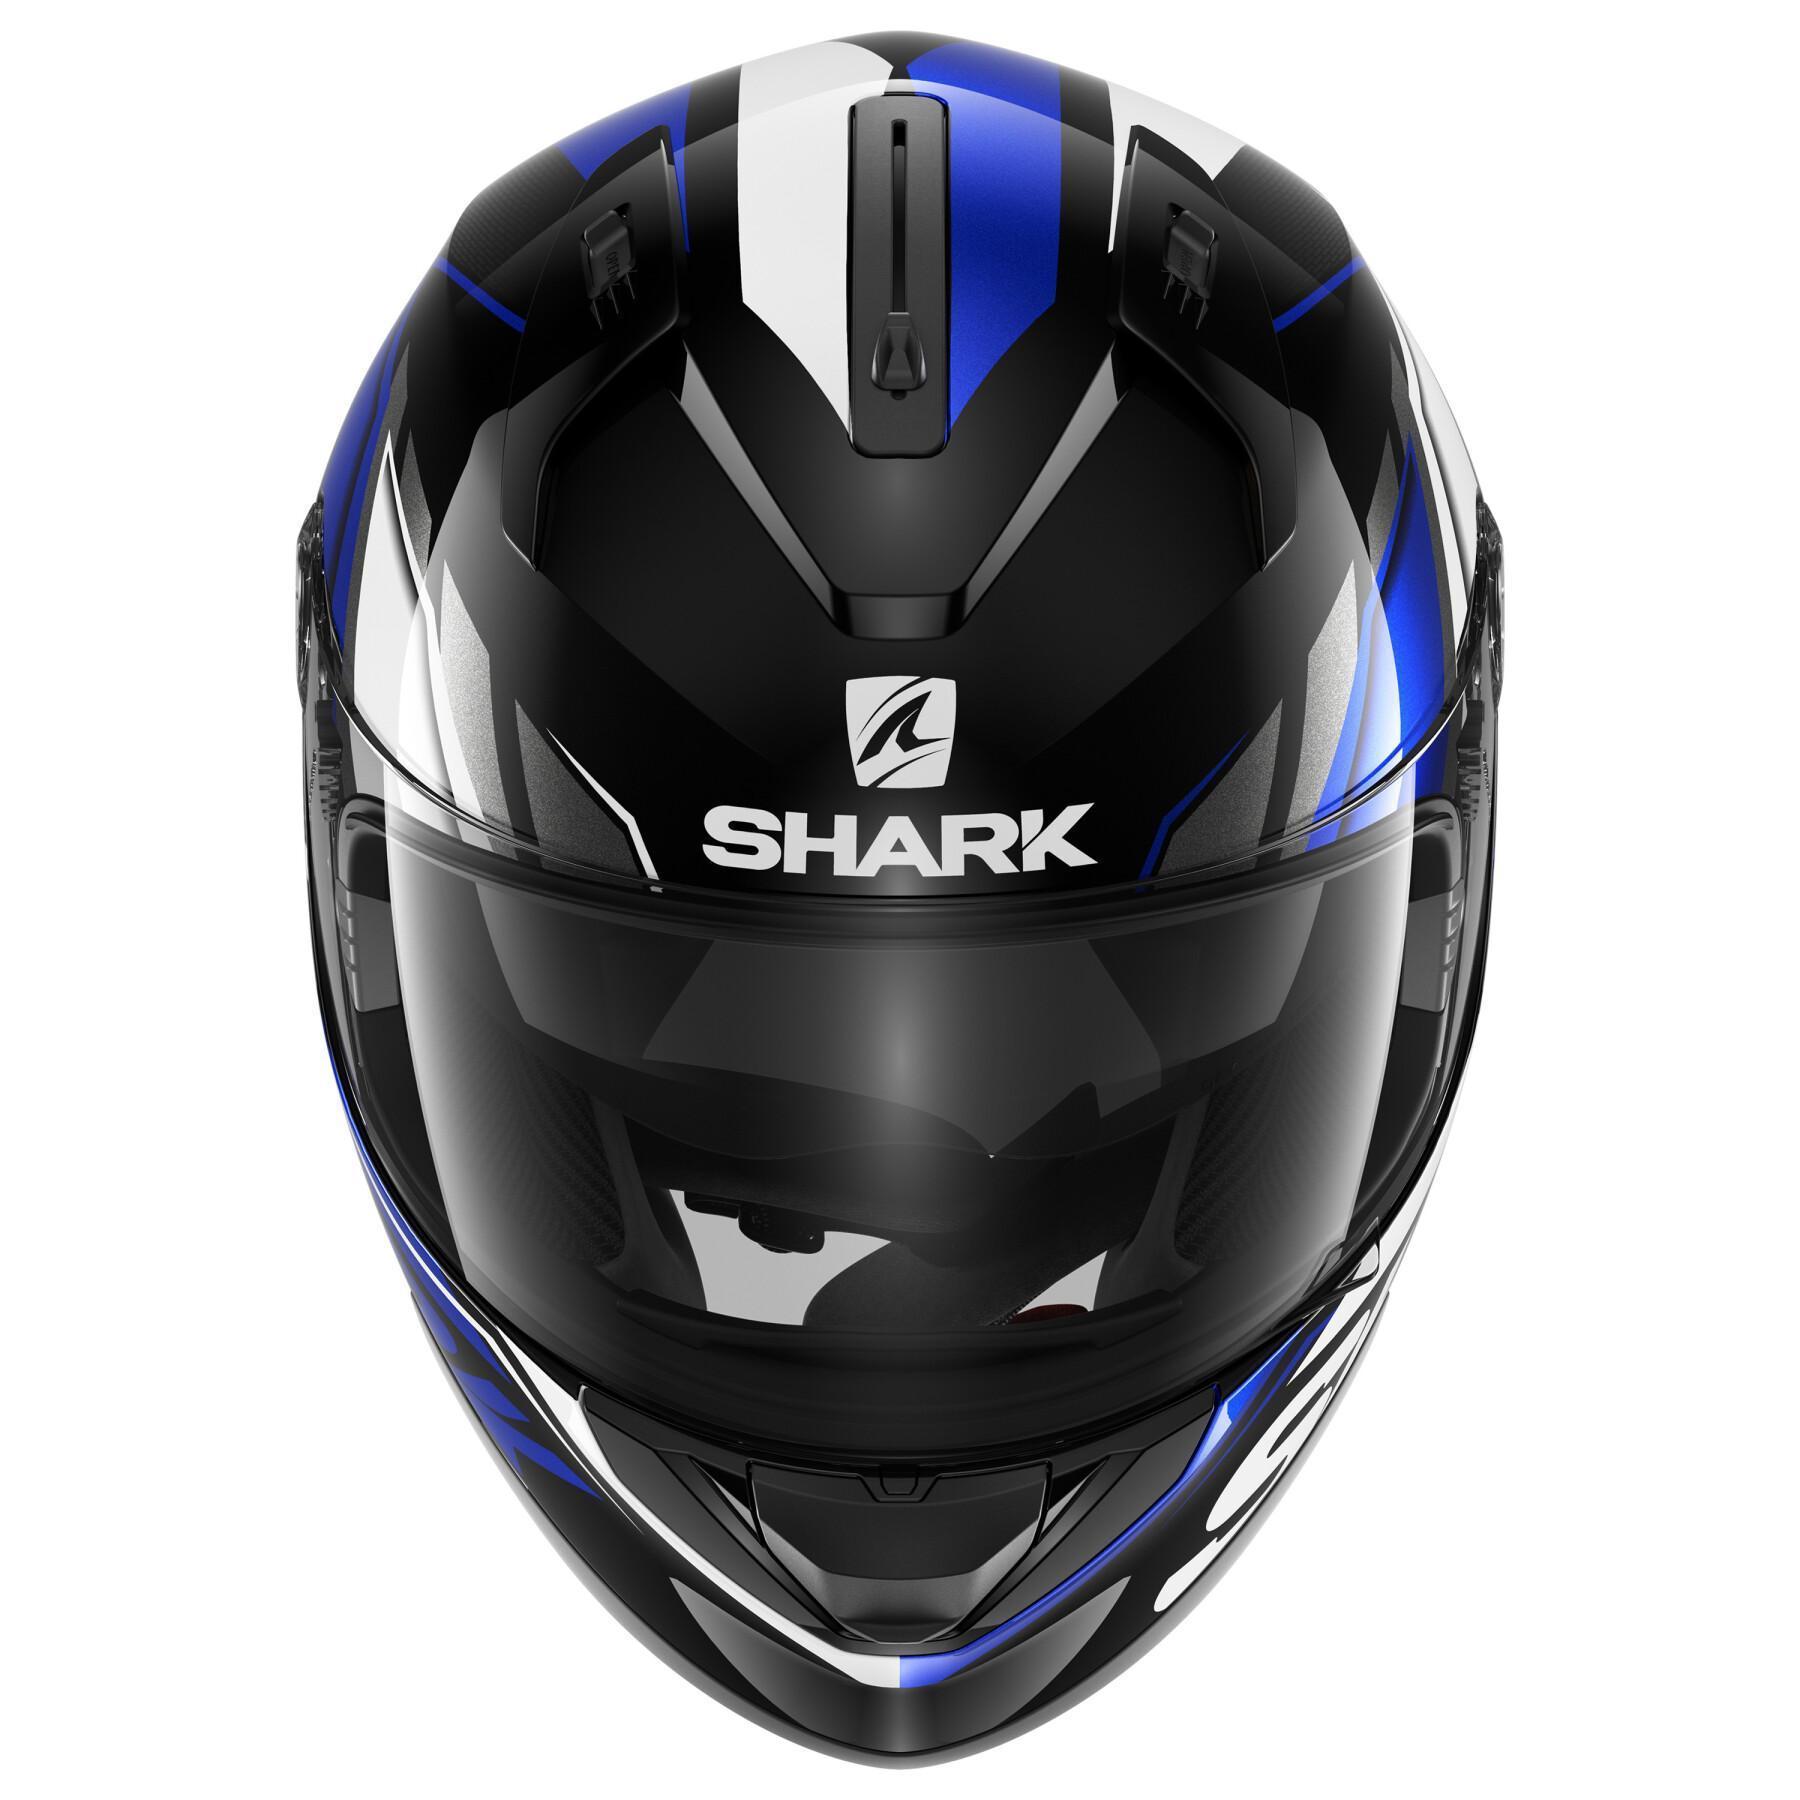 Motorrad-Integralhelm Shark ridill 1.2 phaz